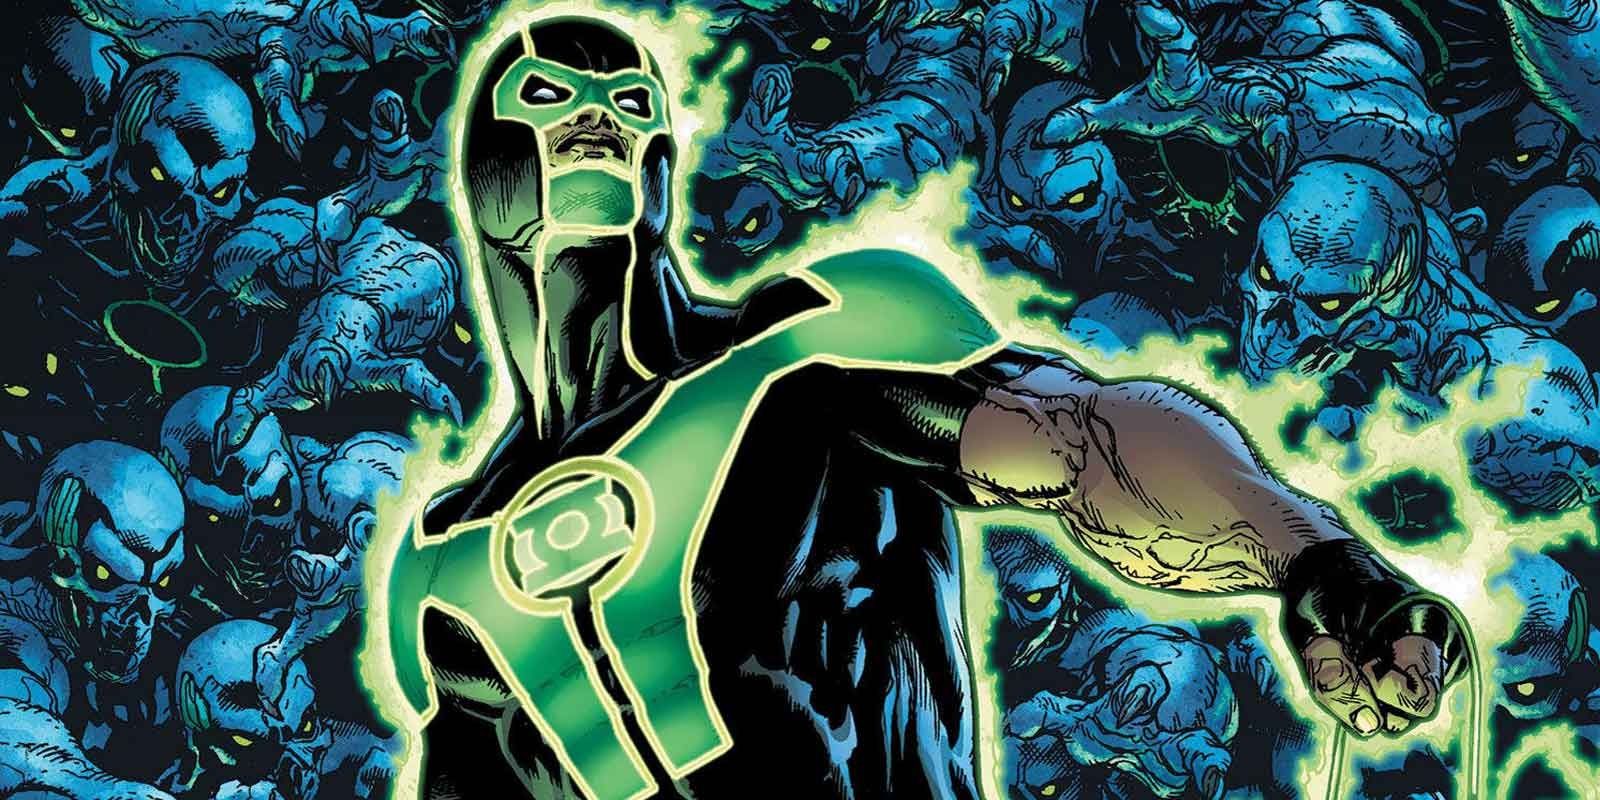 Simon Baz as a Green Lantern in DC Comics